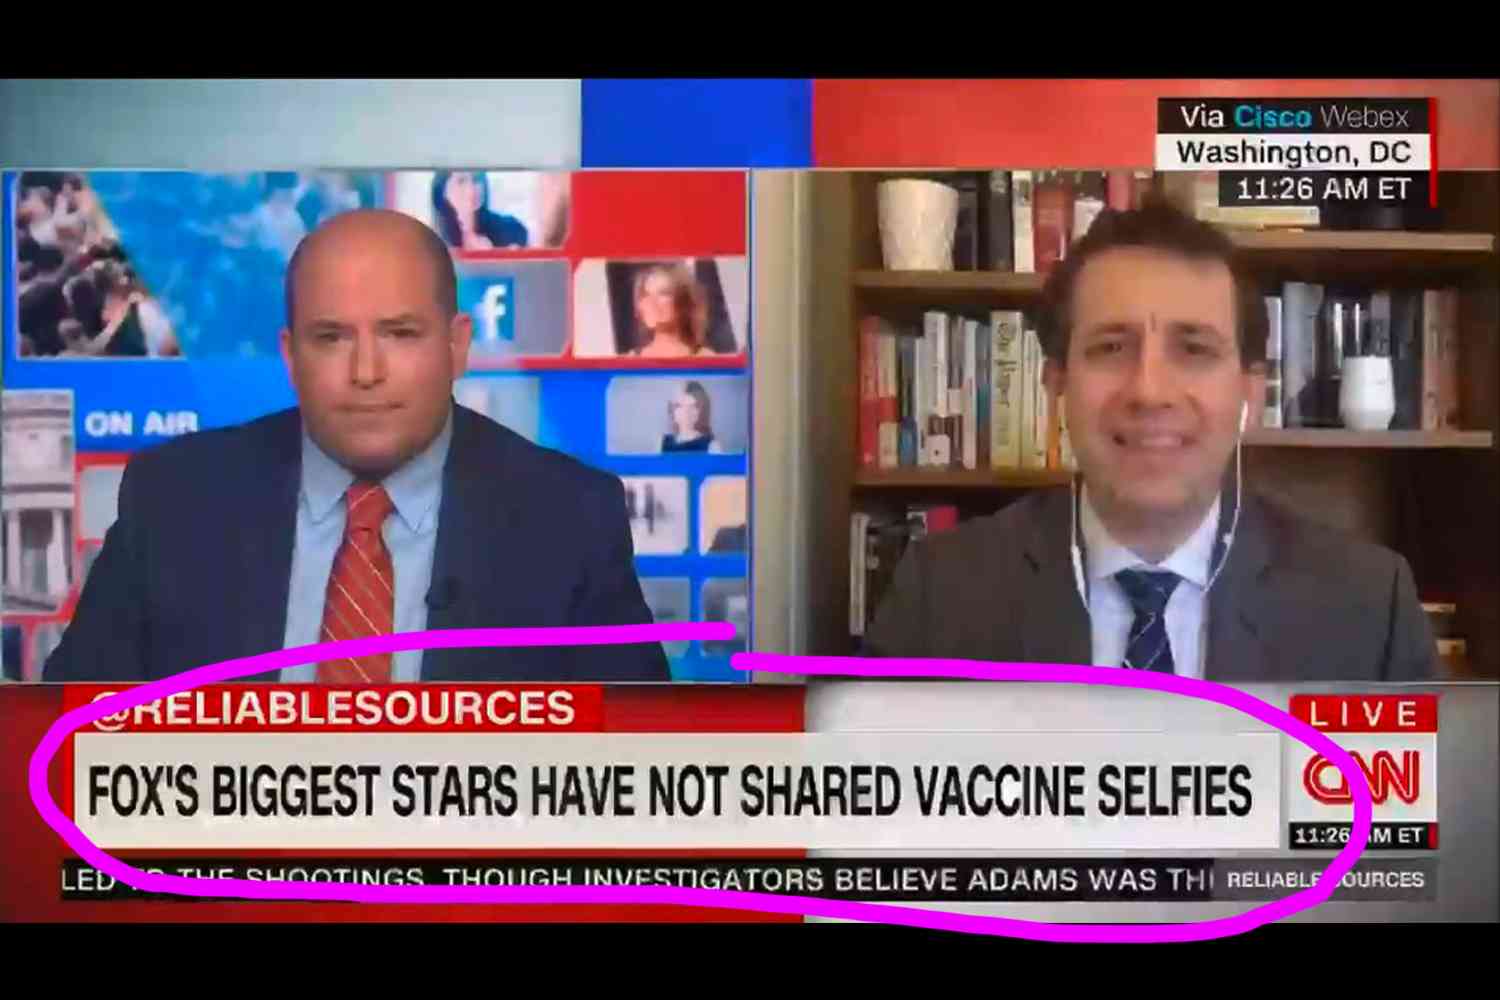 cnn_fox_biggest_stars_vaccine_selfies.jp